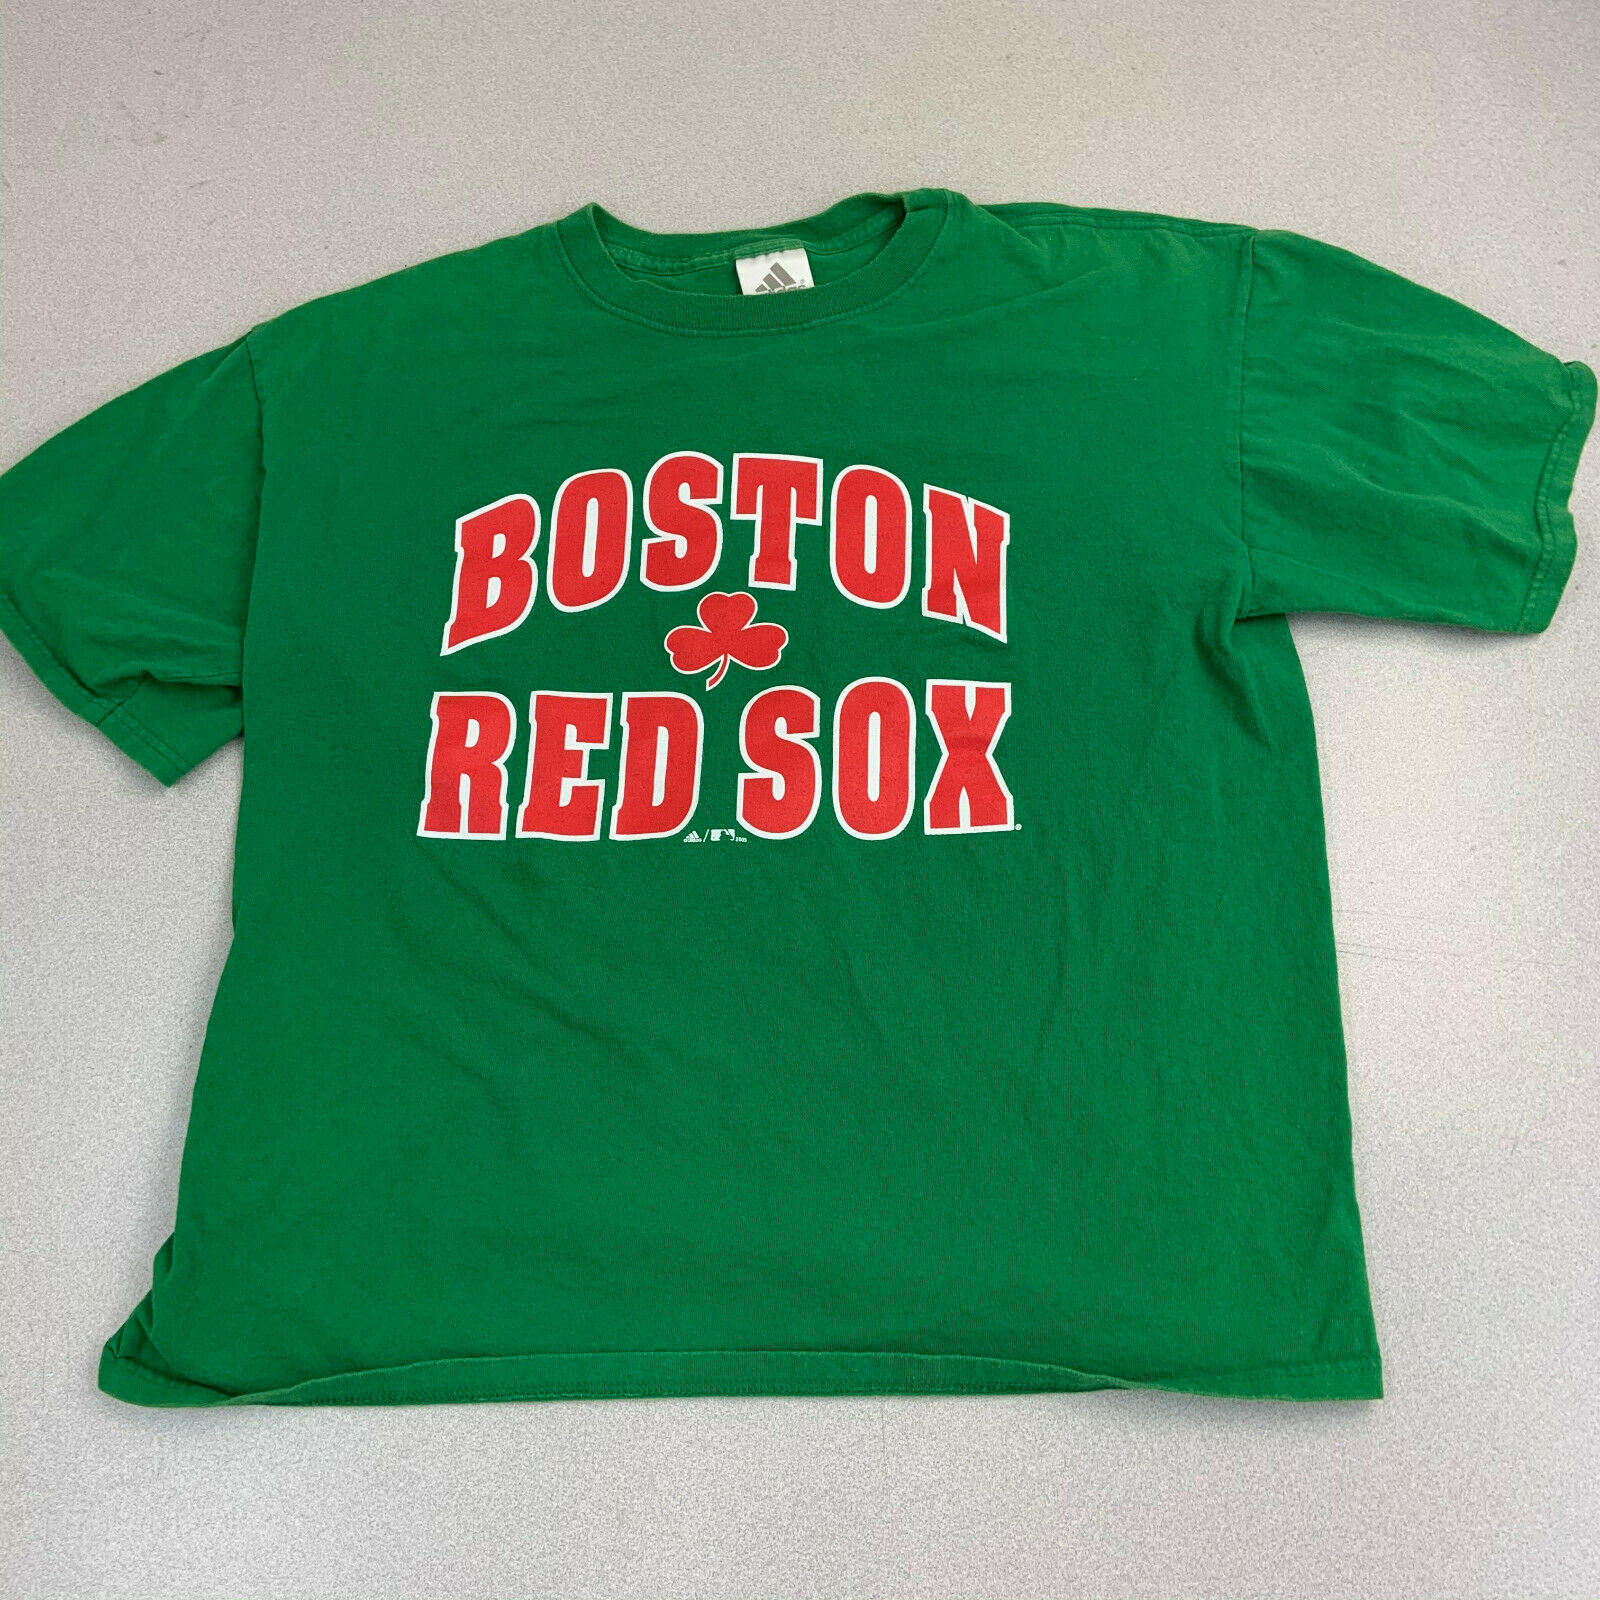 Adidas Boston Red Sox T-shirt Mens Large Green St Patricks Day Short ...